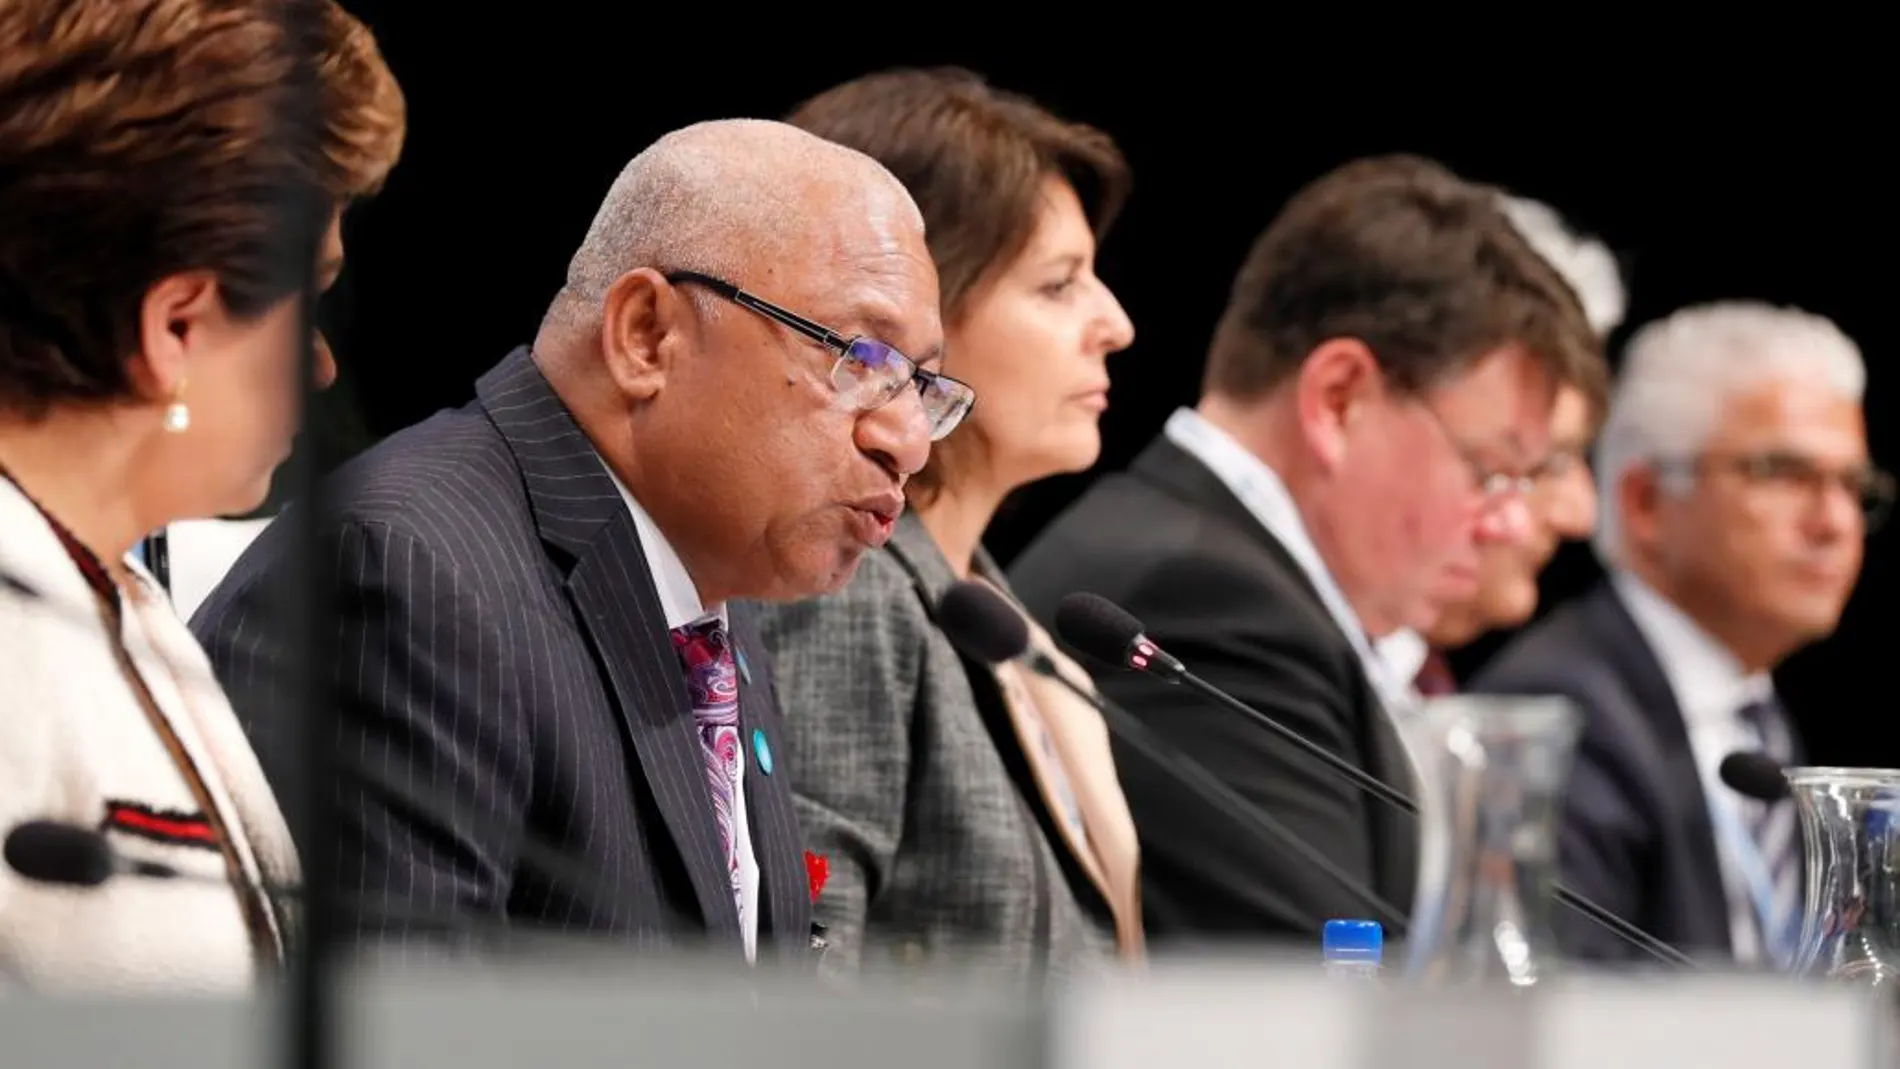 El primer ministro de Fiji, Frank Bainimarama (izq), presidente de COP23/CMP13, da un discurso durante la inauguración de la Conferencia sobre el Cambio Climático de la ONU COP23 en Bonn (Alemania), hoy